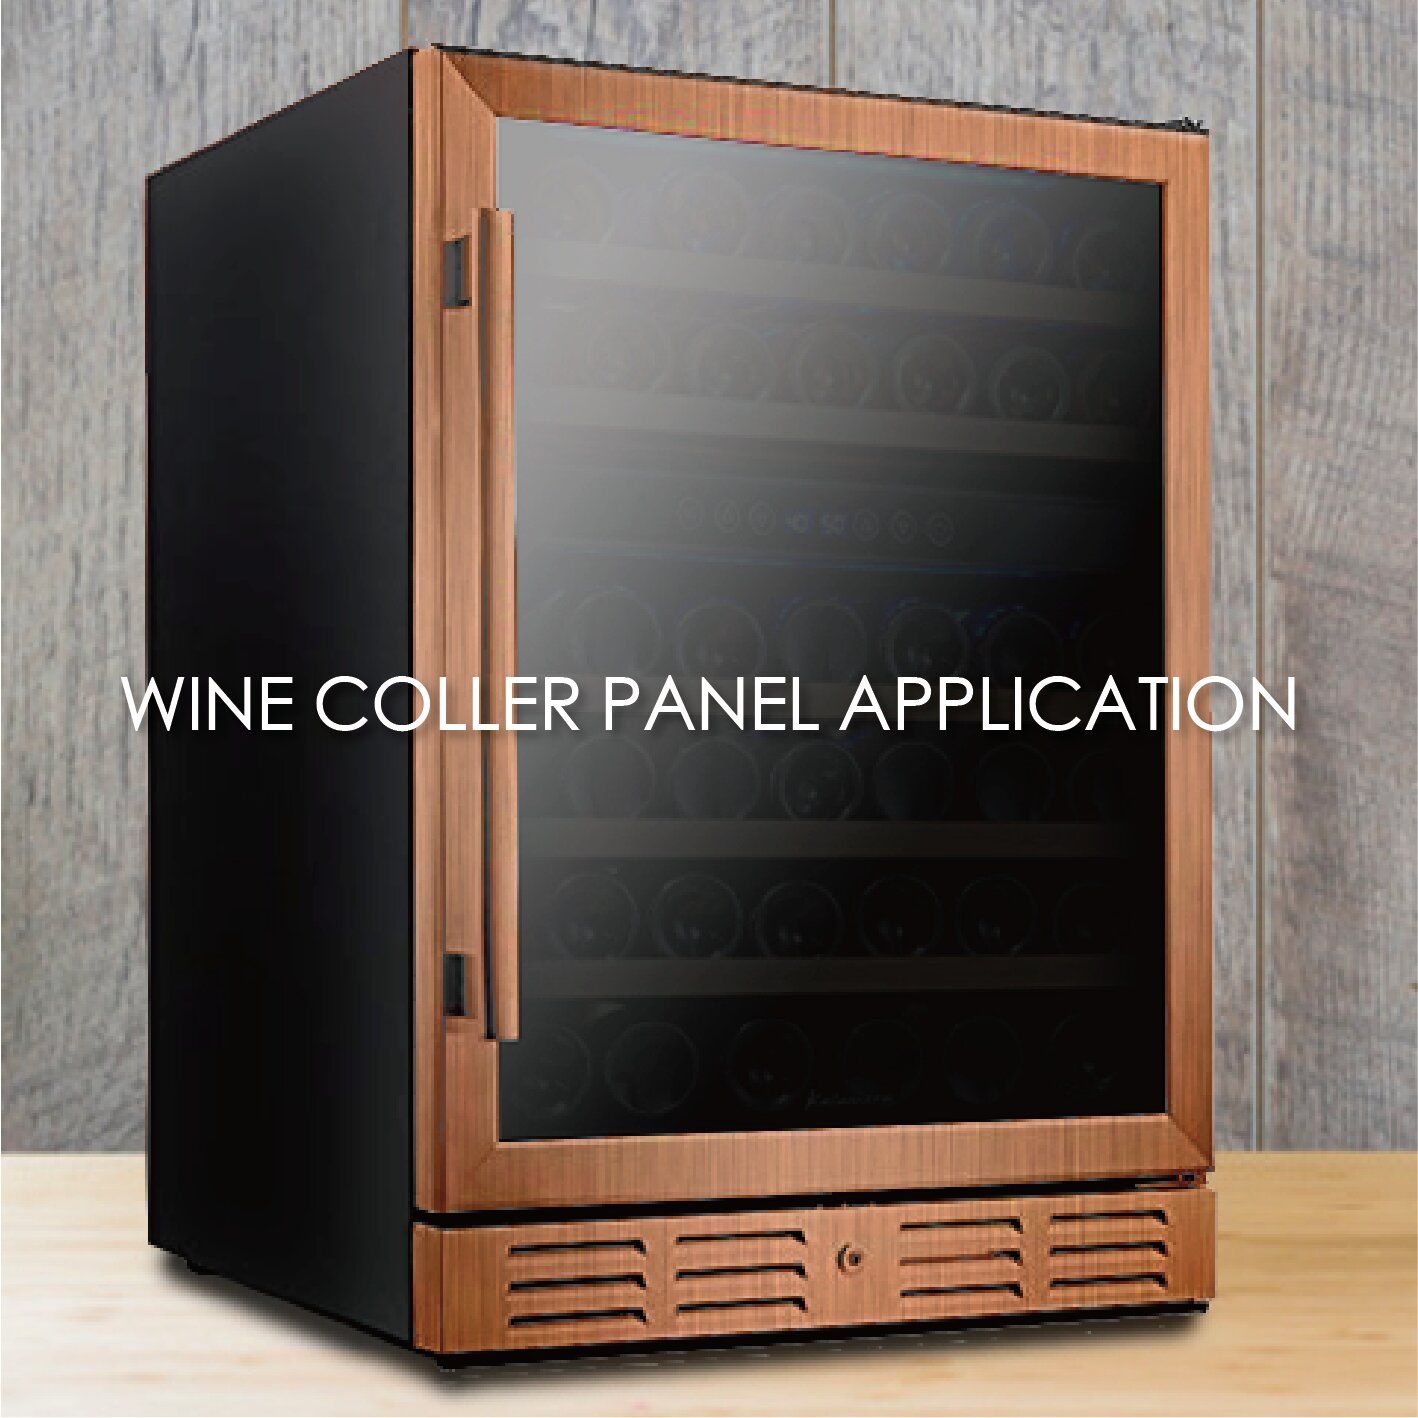 Ahşap tahıl kaplamalı metal kullanarak şarap soğutucu panellerinin estetiği ve dayanıklılığı artırılabilir